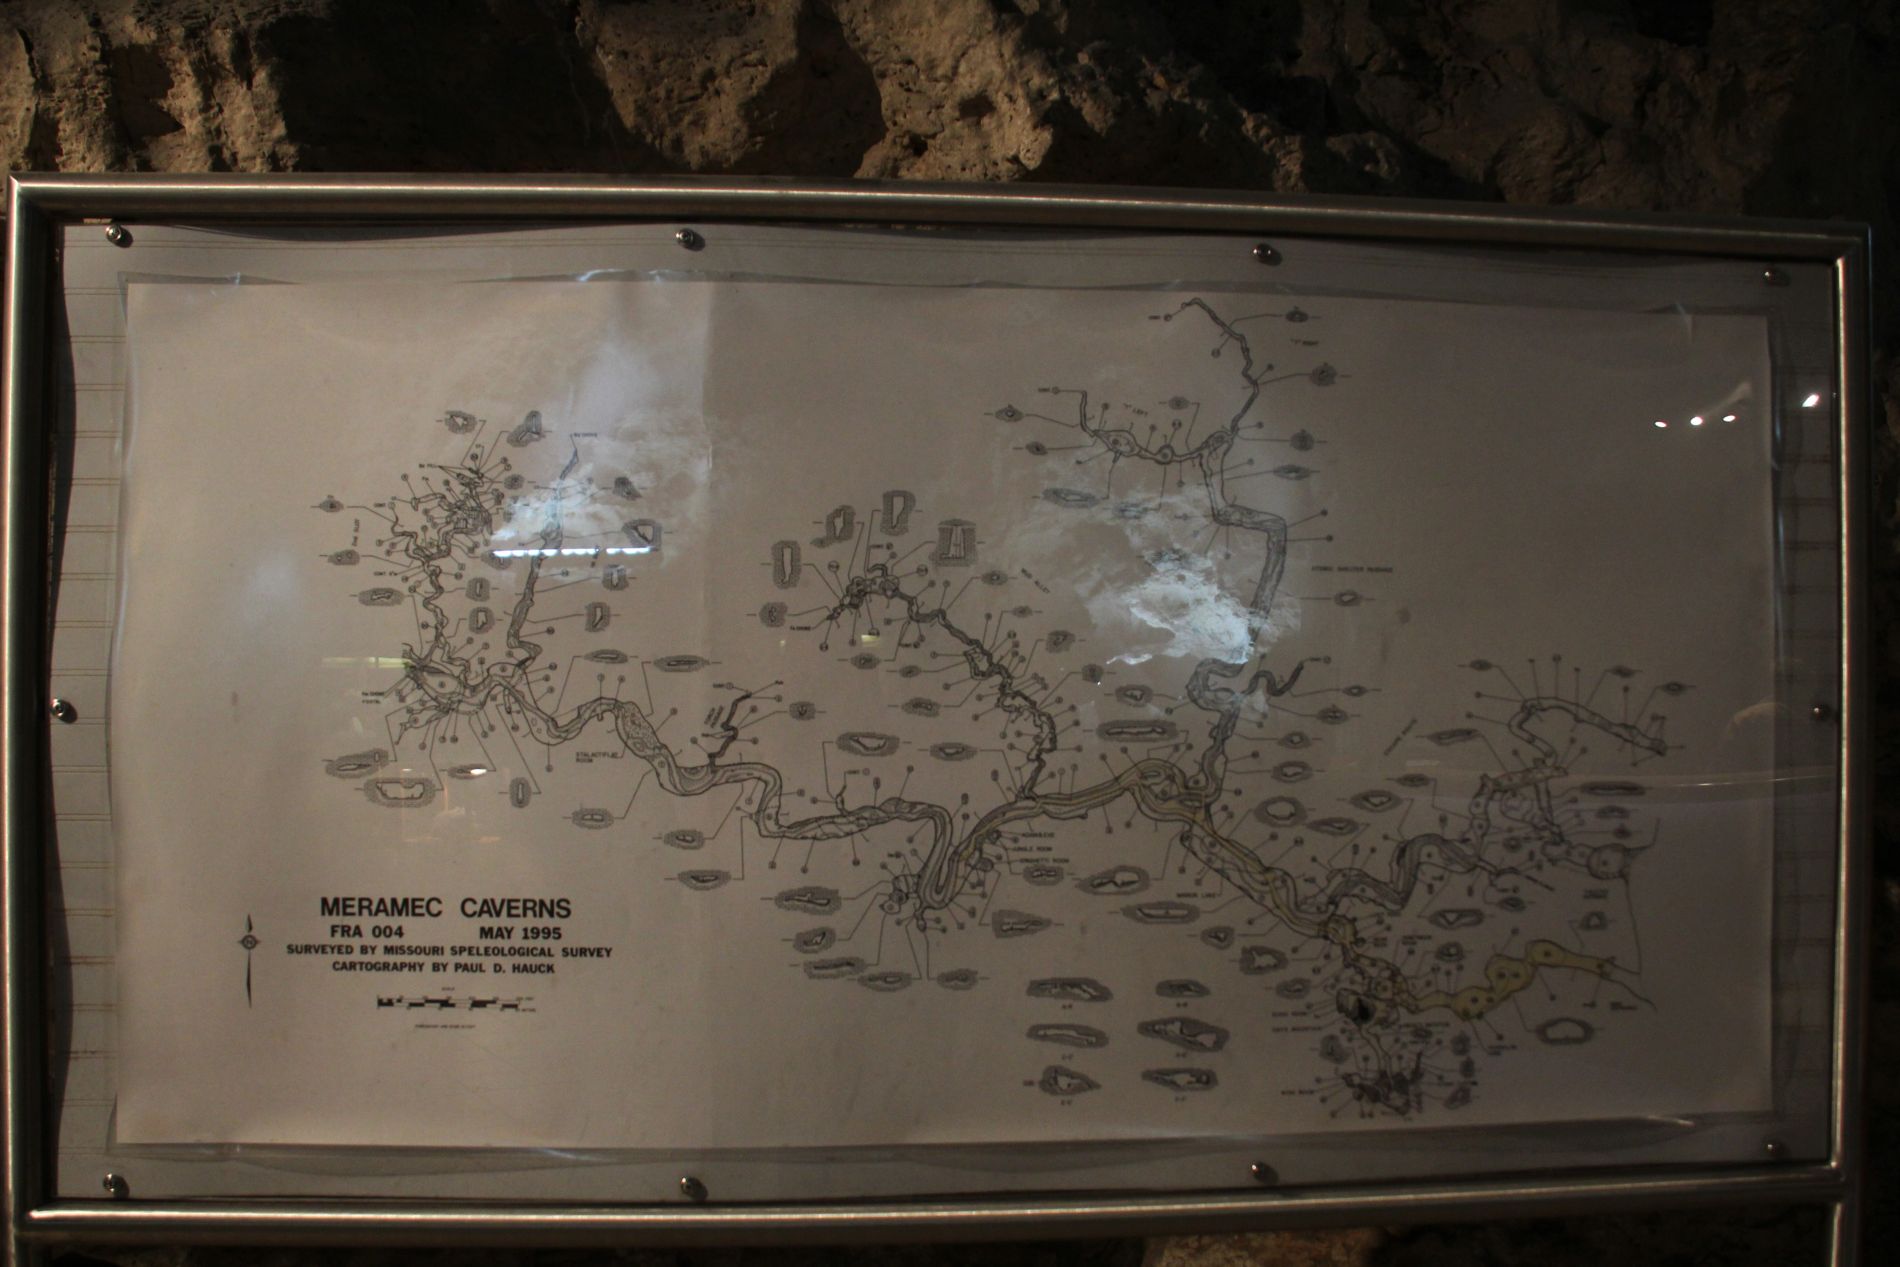 Meramec Caverns map in Stanton, Missouri